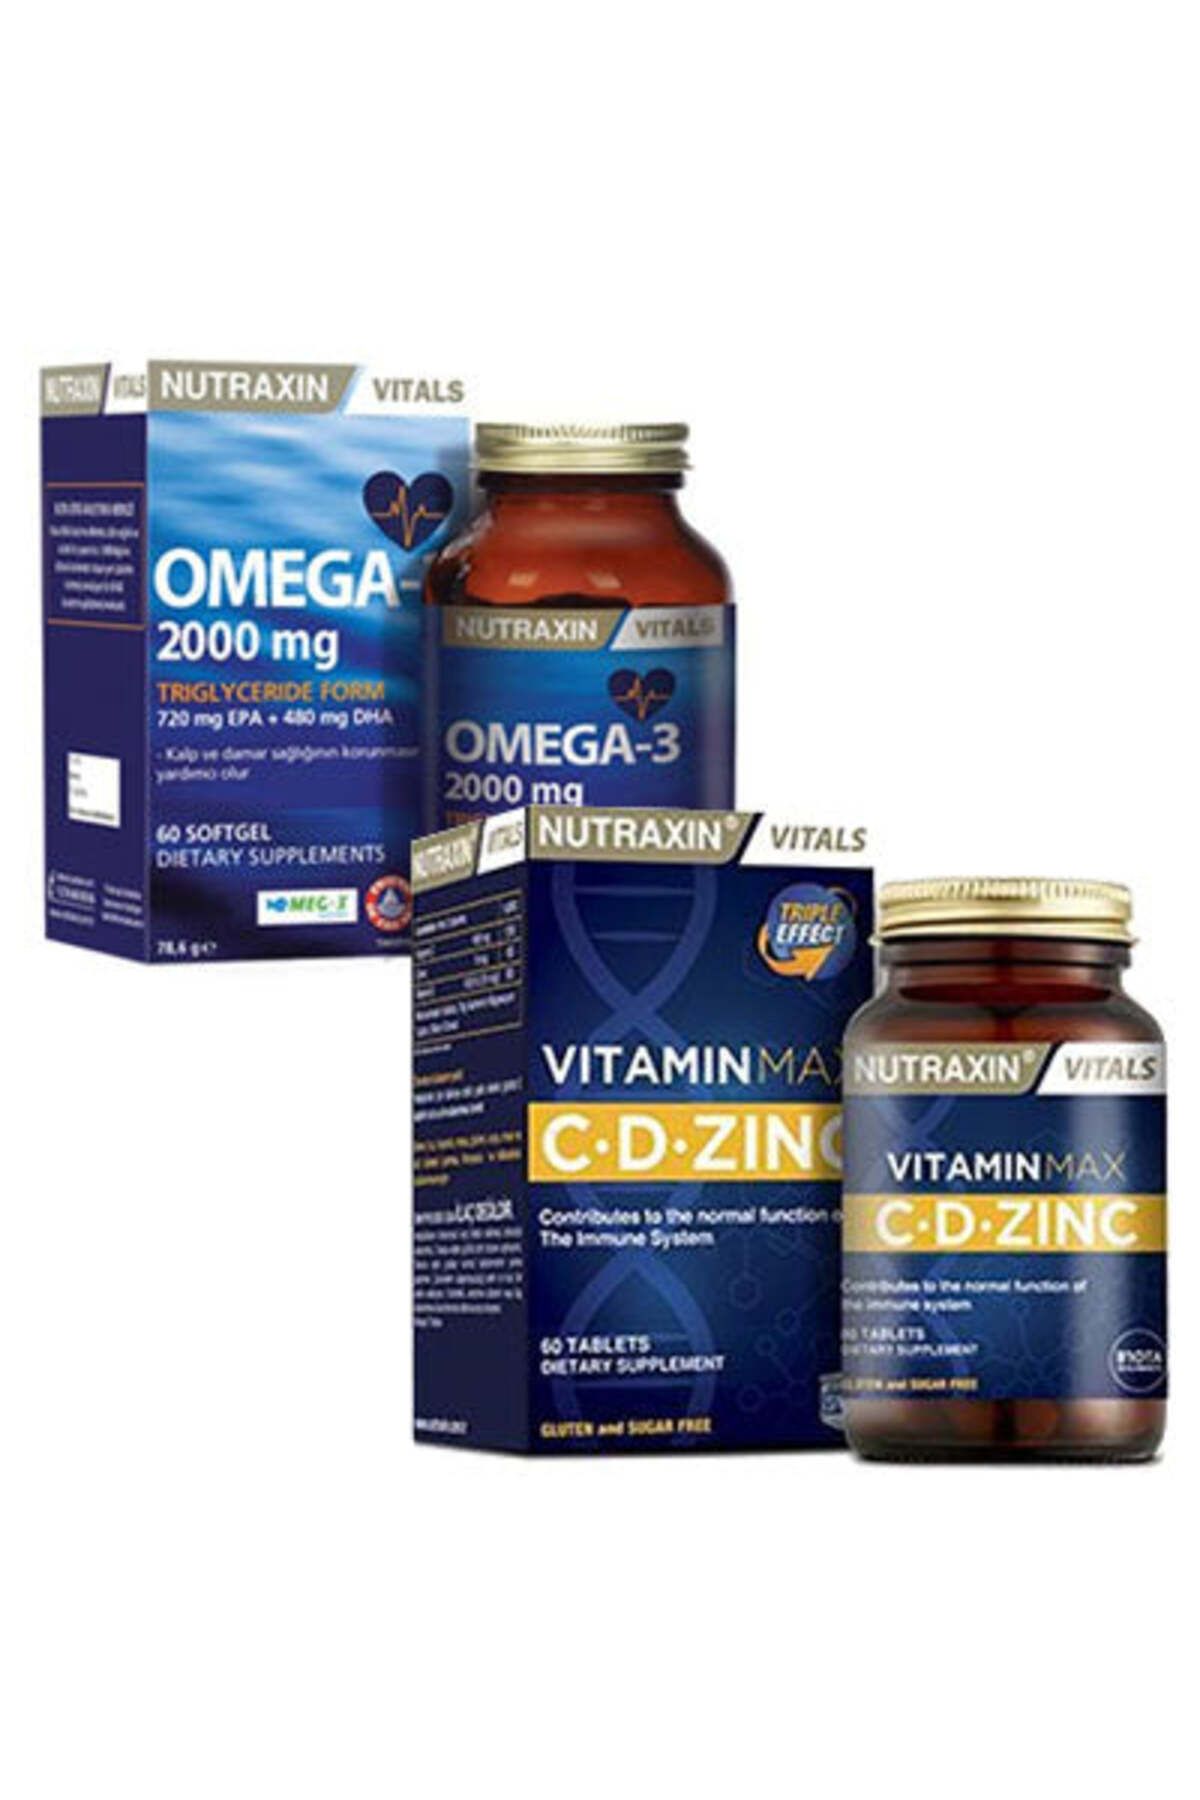 Nutraxin Omega-3 2000 mg & Vitamin Max C- D- Zinc